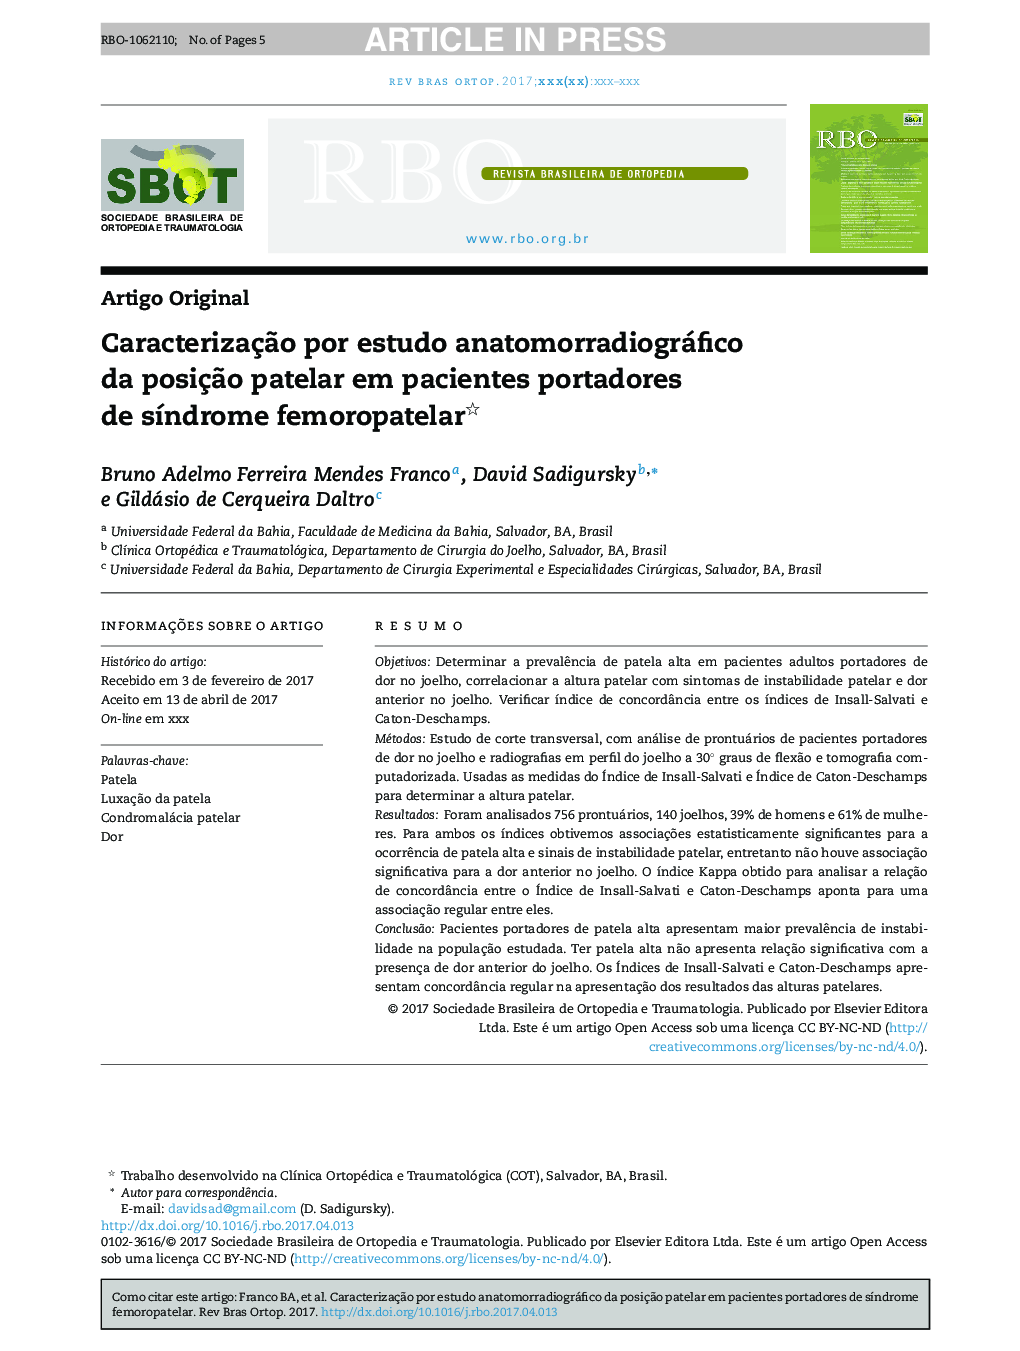 CaracterizaçÃ£o por estudo anatomorradiográfico da posiçÃ£o patelar em pacientes portadores de sÃ­ndrome femoropatelar